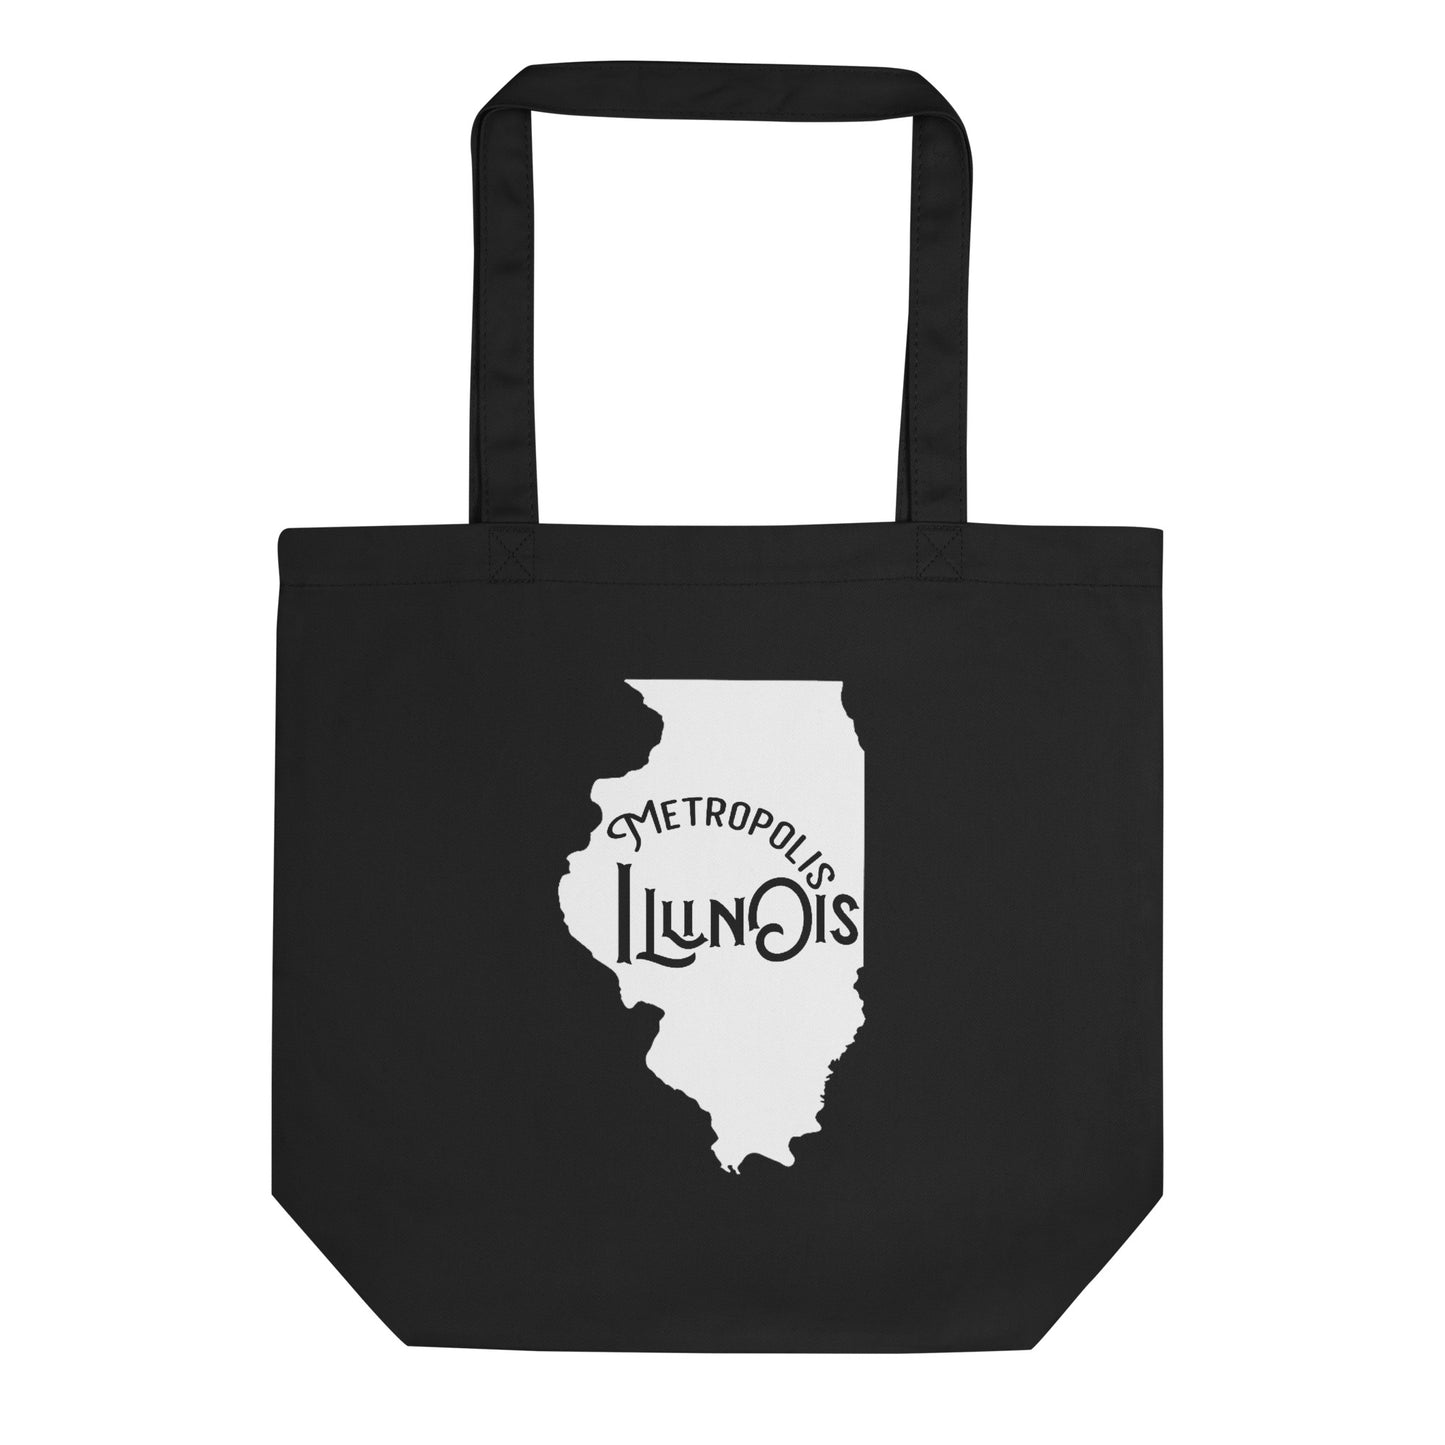 Metropolis Illinois Eco Tote Bag